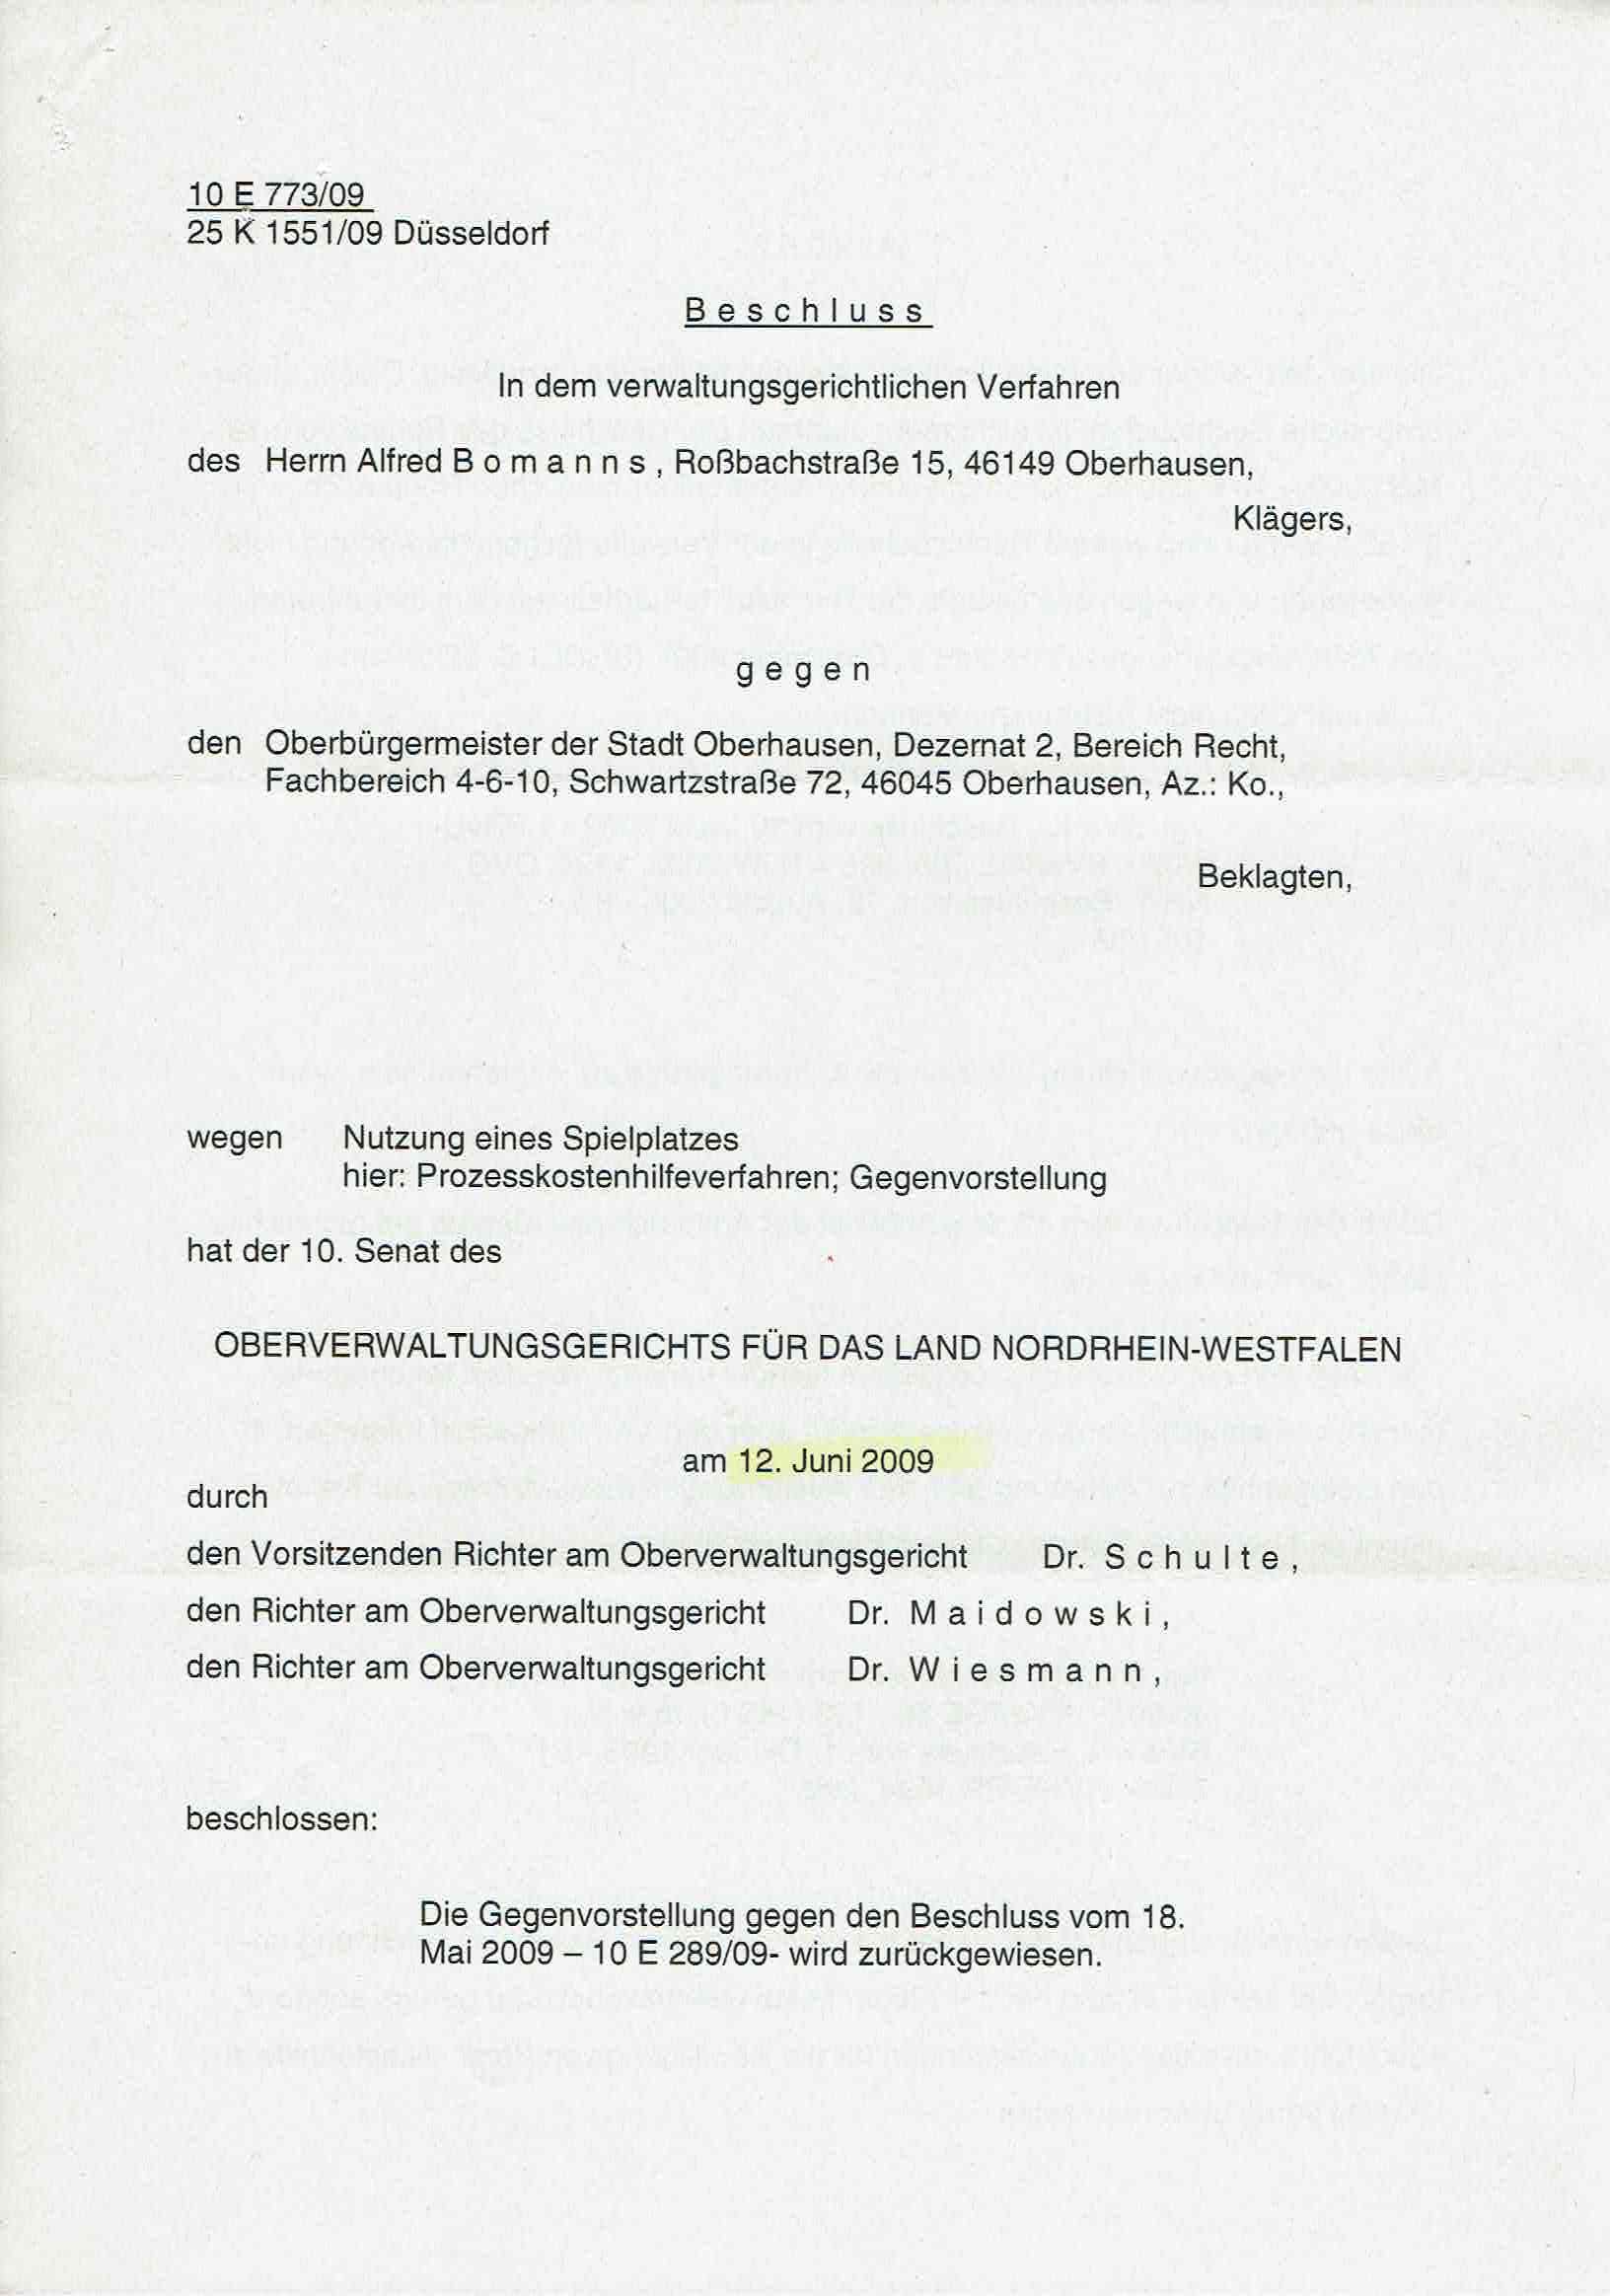 Bescheid der Richter Dr. Bernhard Schulte alias Bernd H. Schulte, Richter Dr. Ulrich Maidowski, Richter Dr. Martin Wiesmann vom 12.06.2009 über die Zurückweisung meiner Gegenvorstellung, S. 1